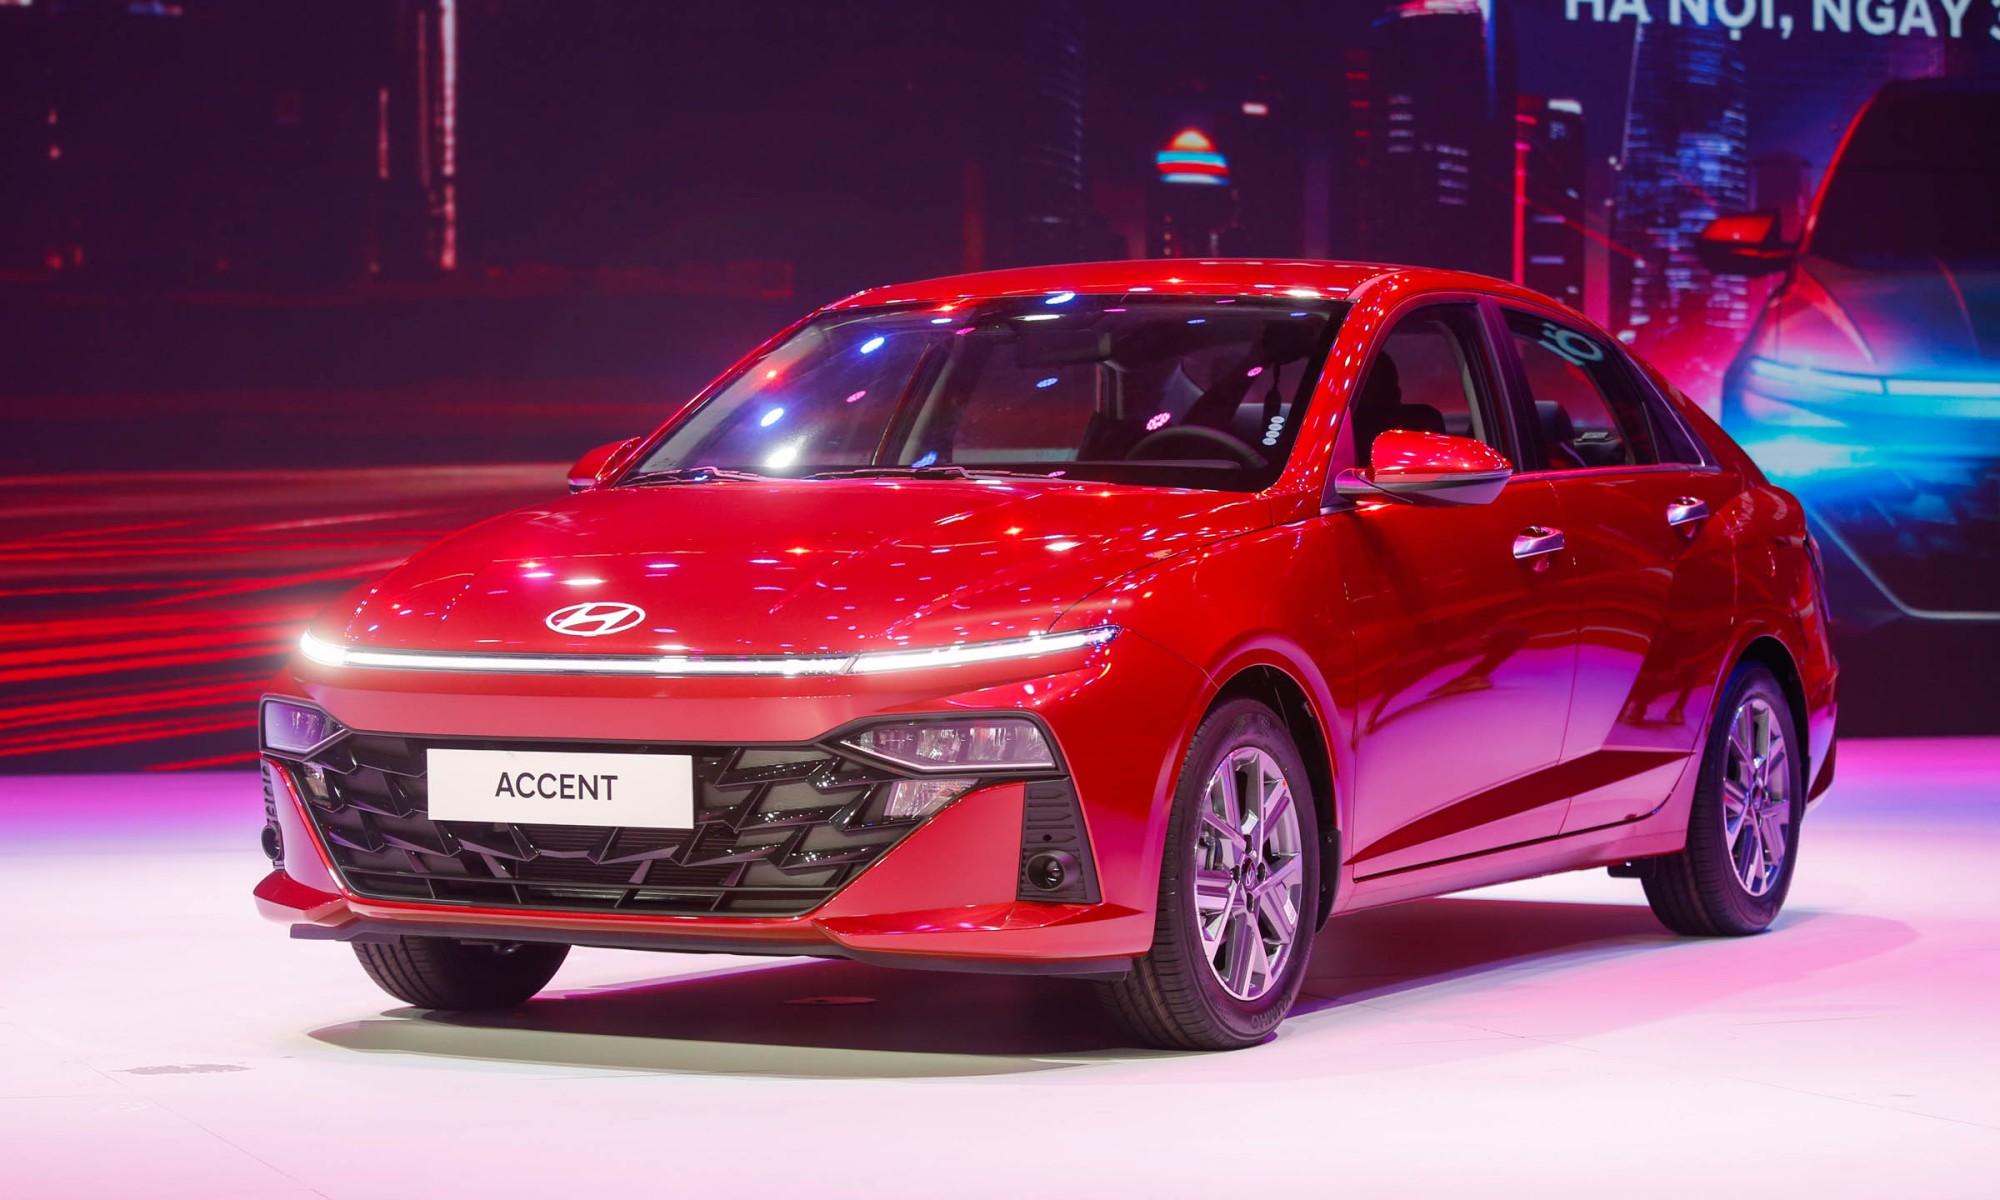 Hyundai Accent thế hệ mới ra mắt, giá từ 439 triệu đồng